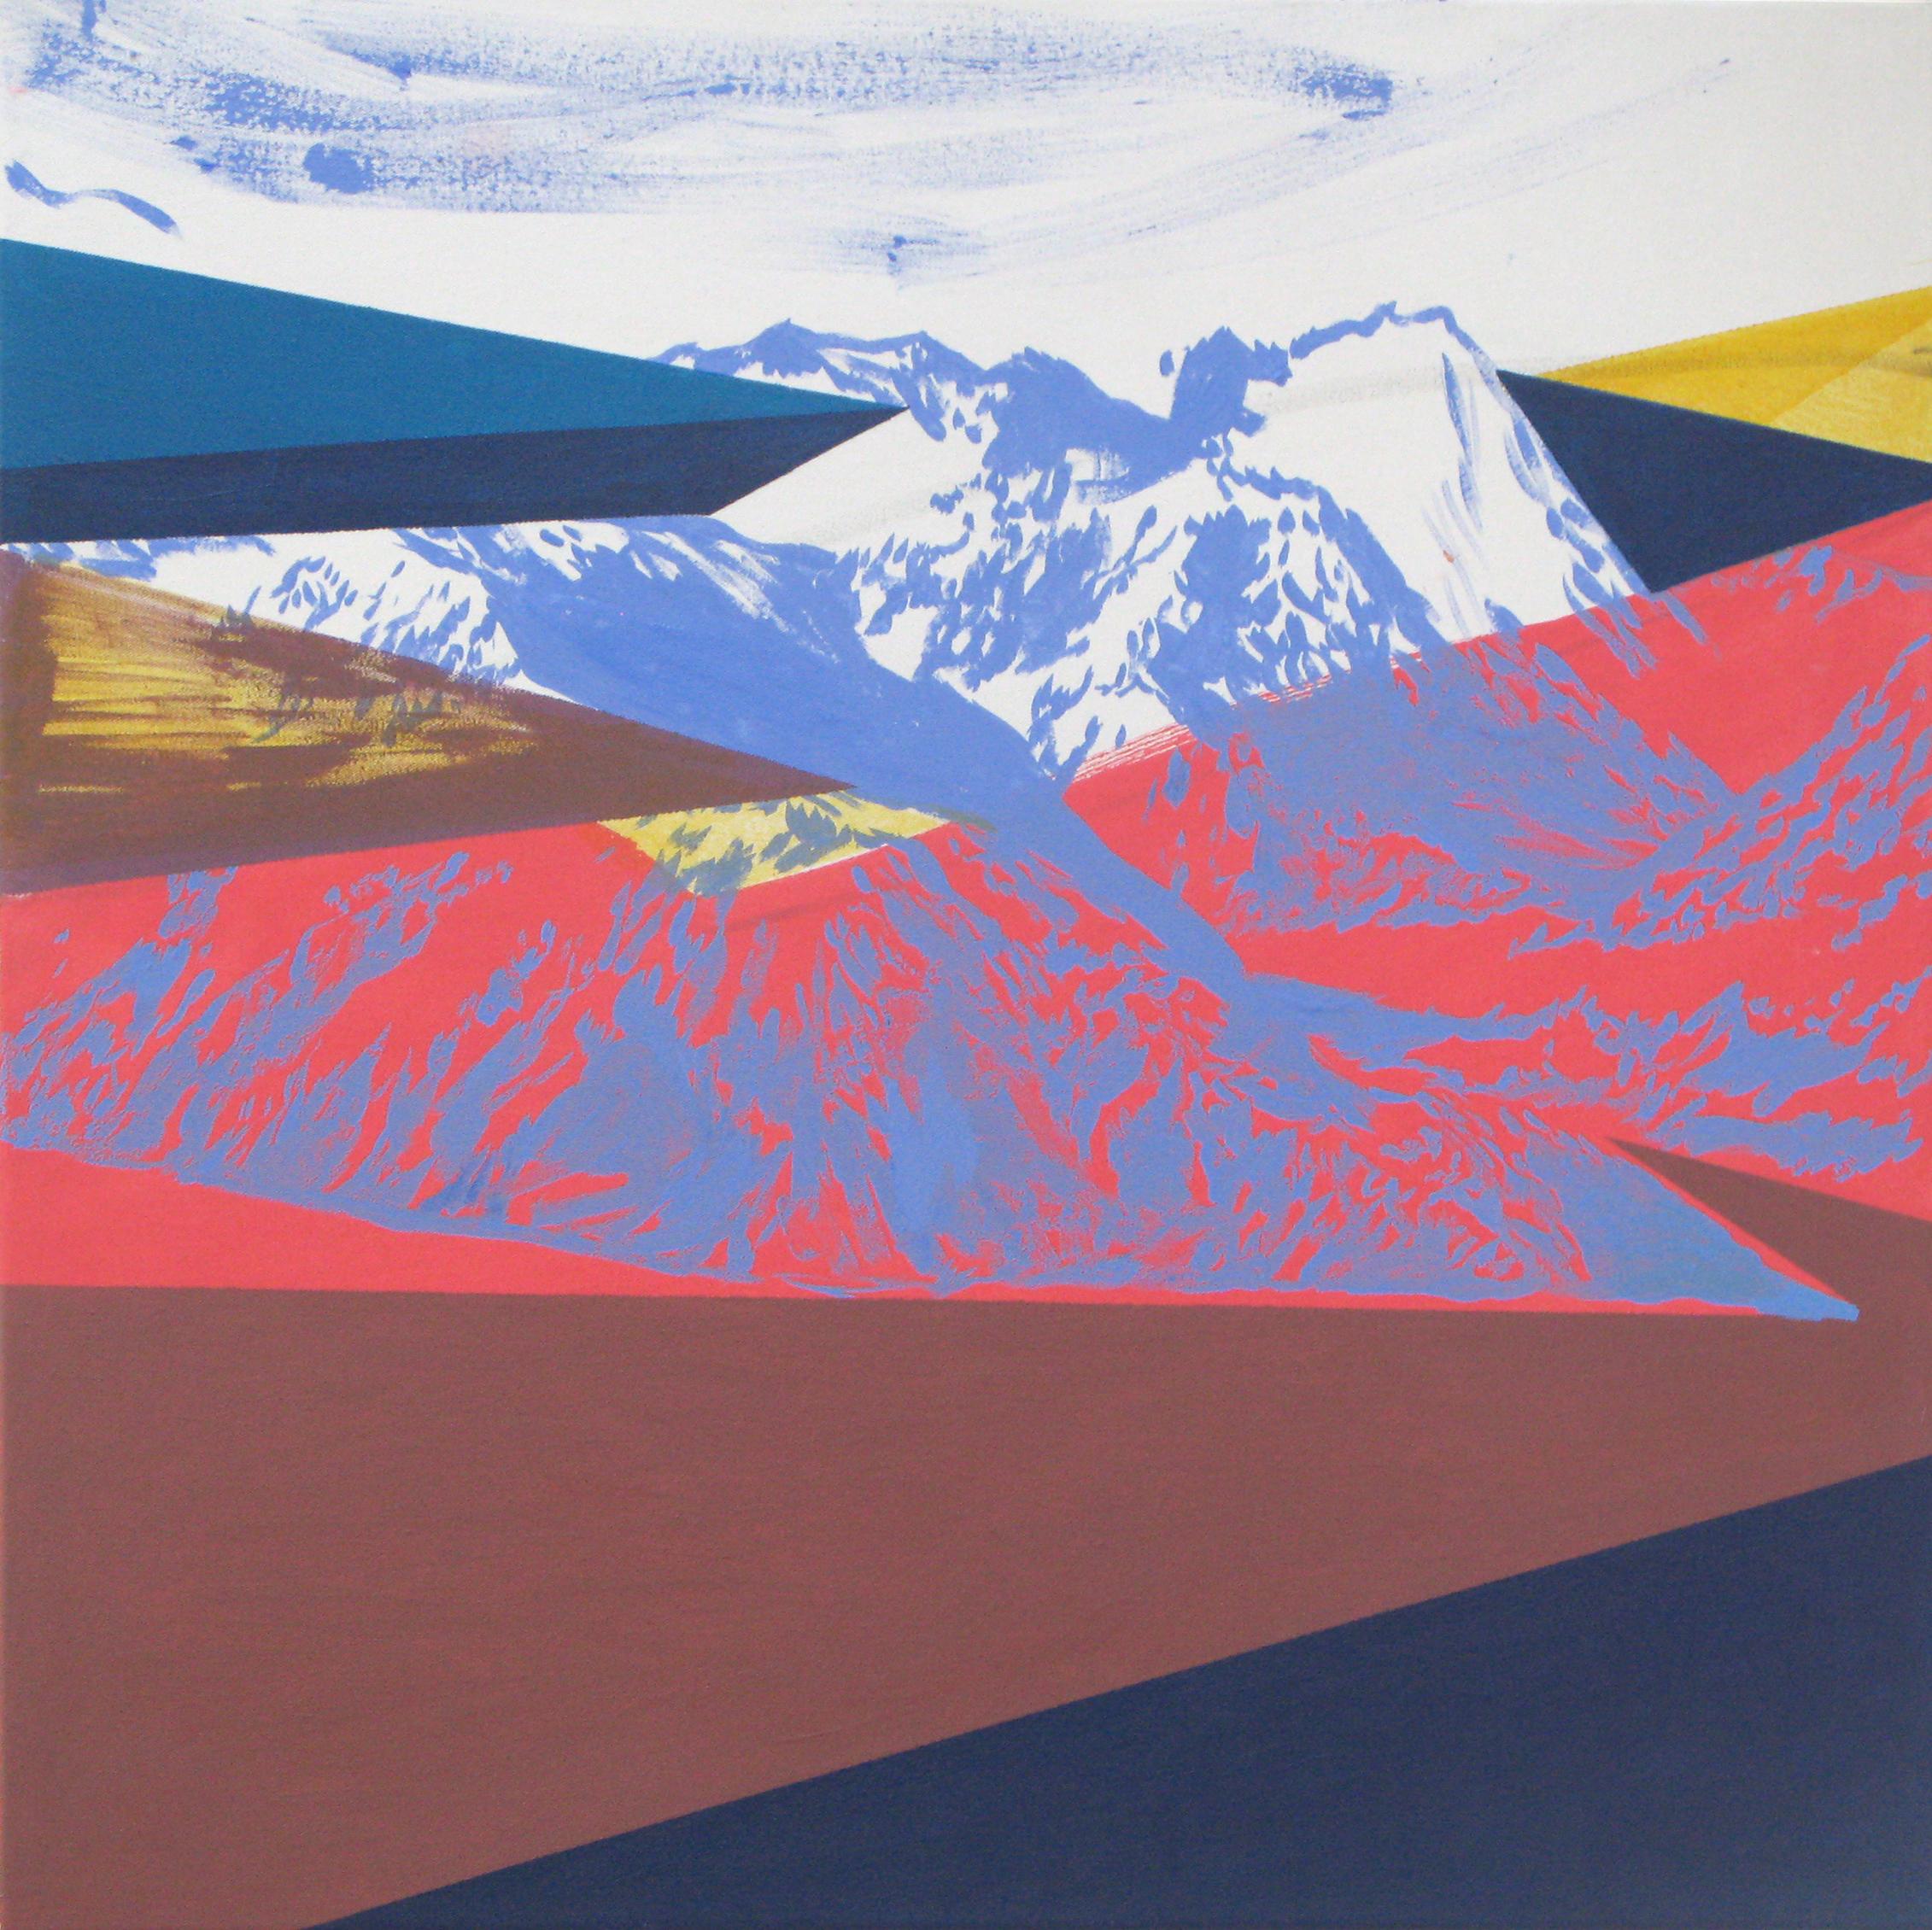 Road - Moderne Landschaft und Berge Gemälde, abstrakt, fröhlich, farbenfroh